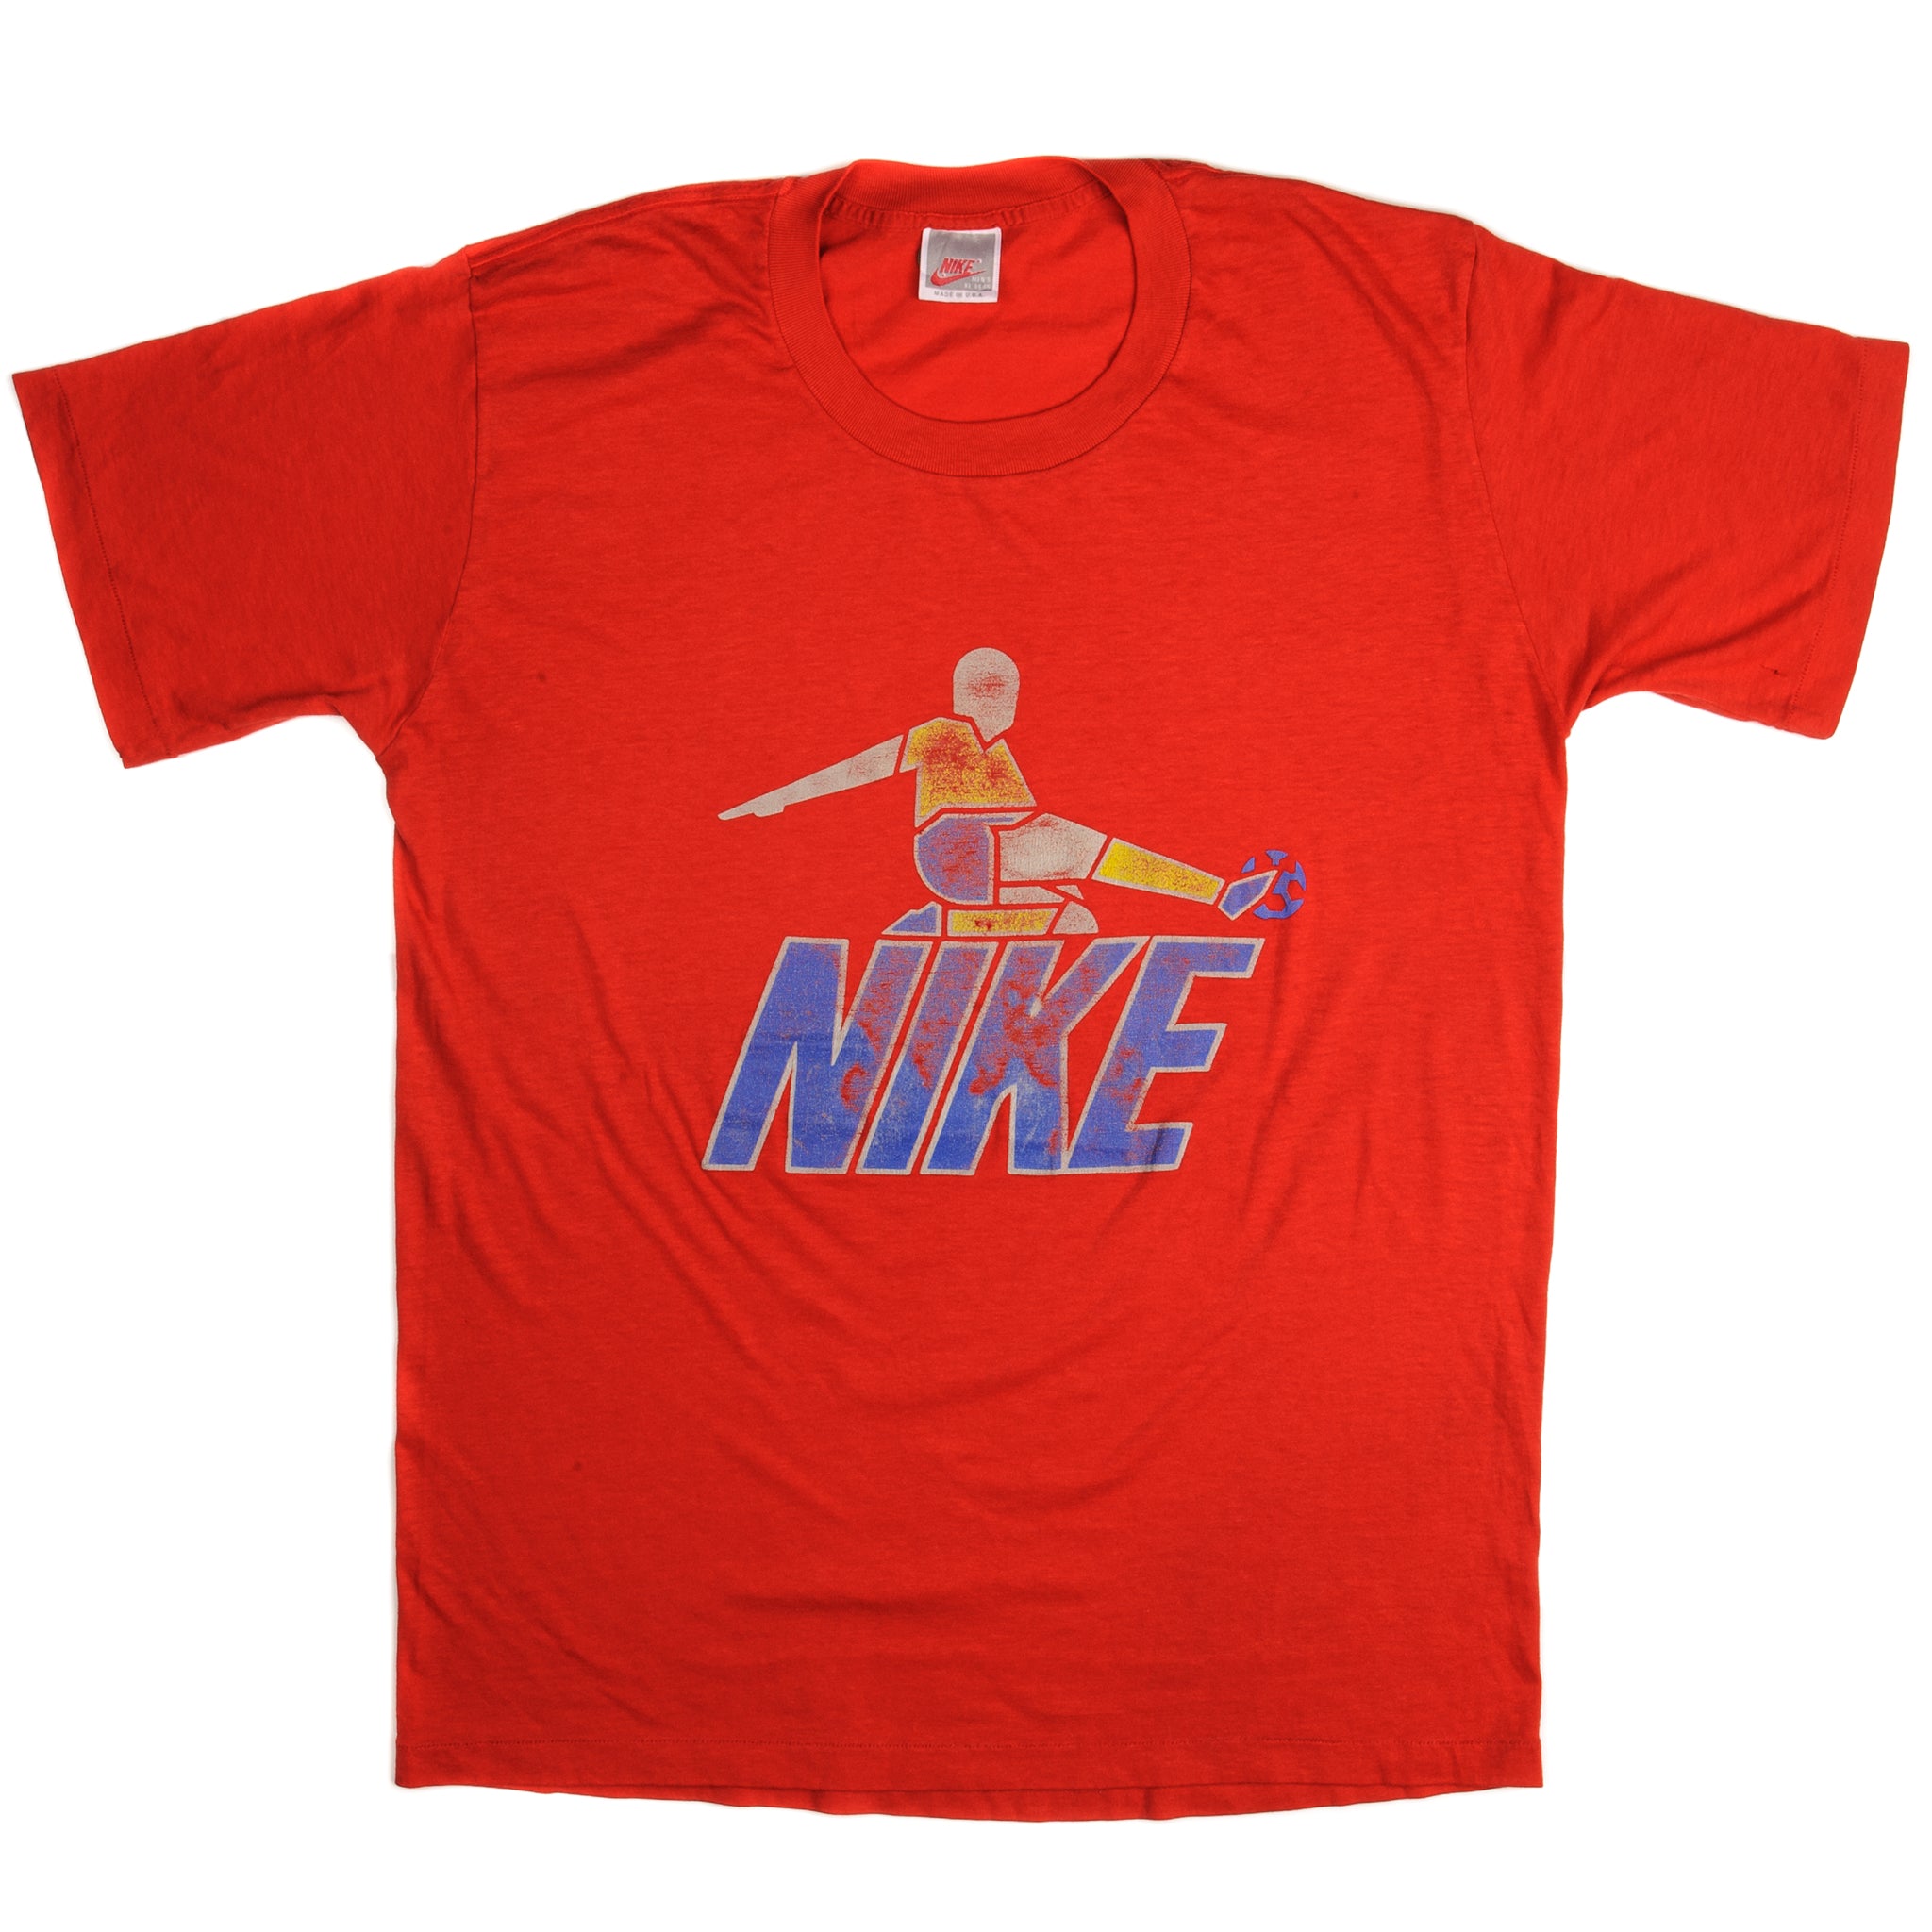 Vintage Nike Tee Shirt 1987-1992 Size Medium Made in USA